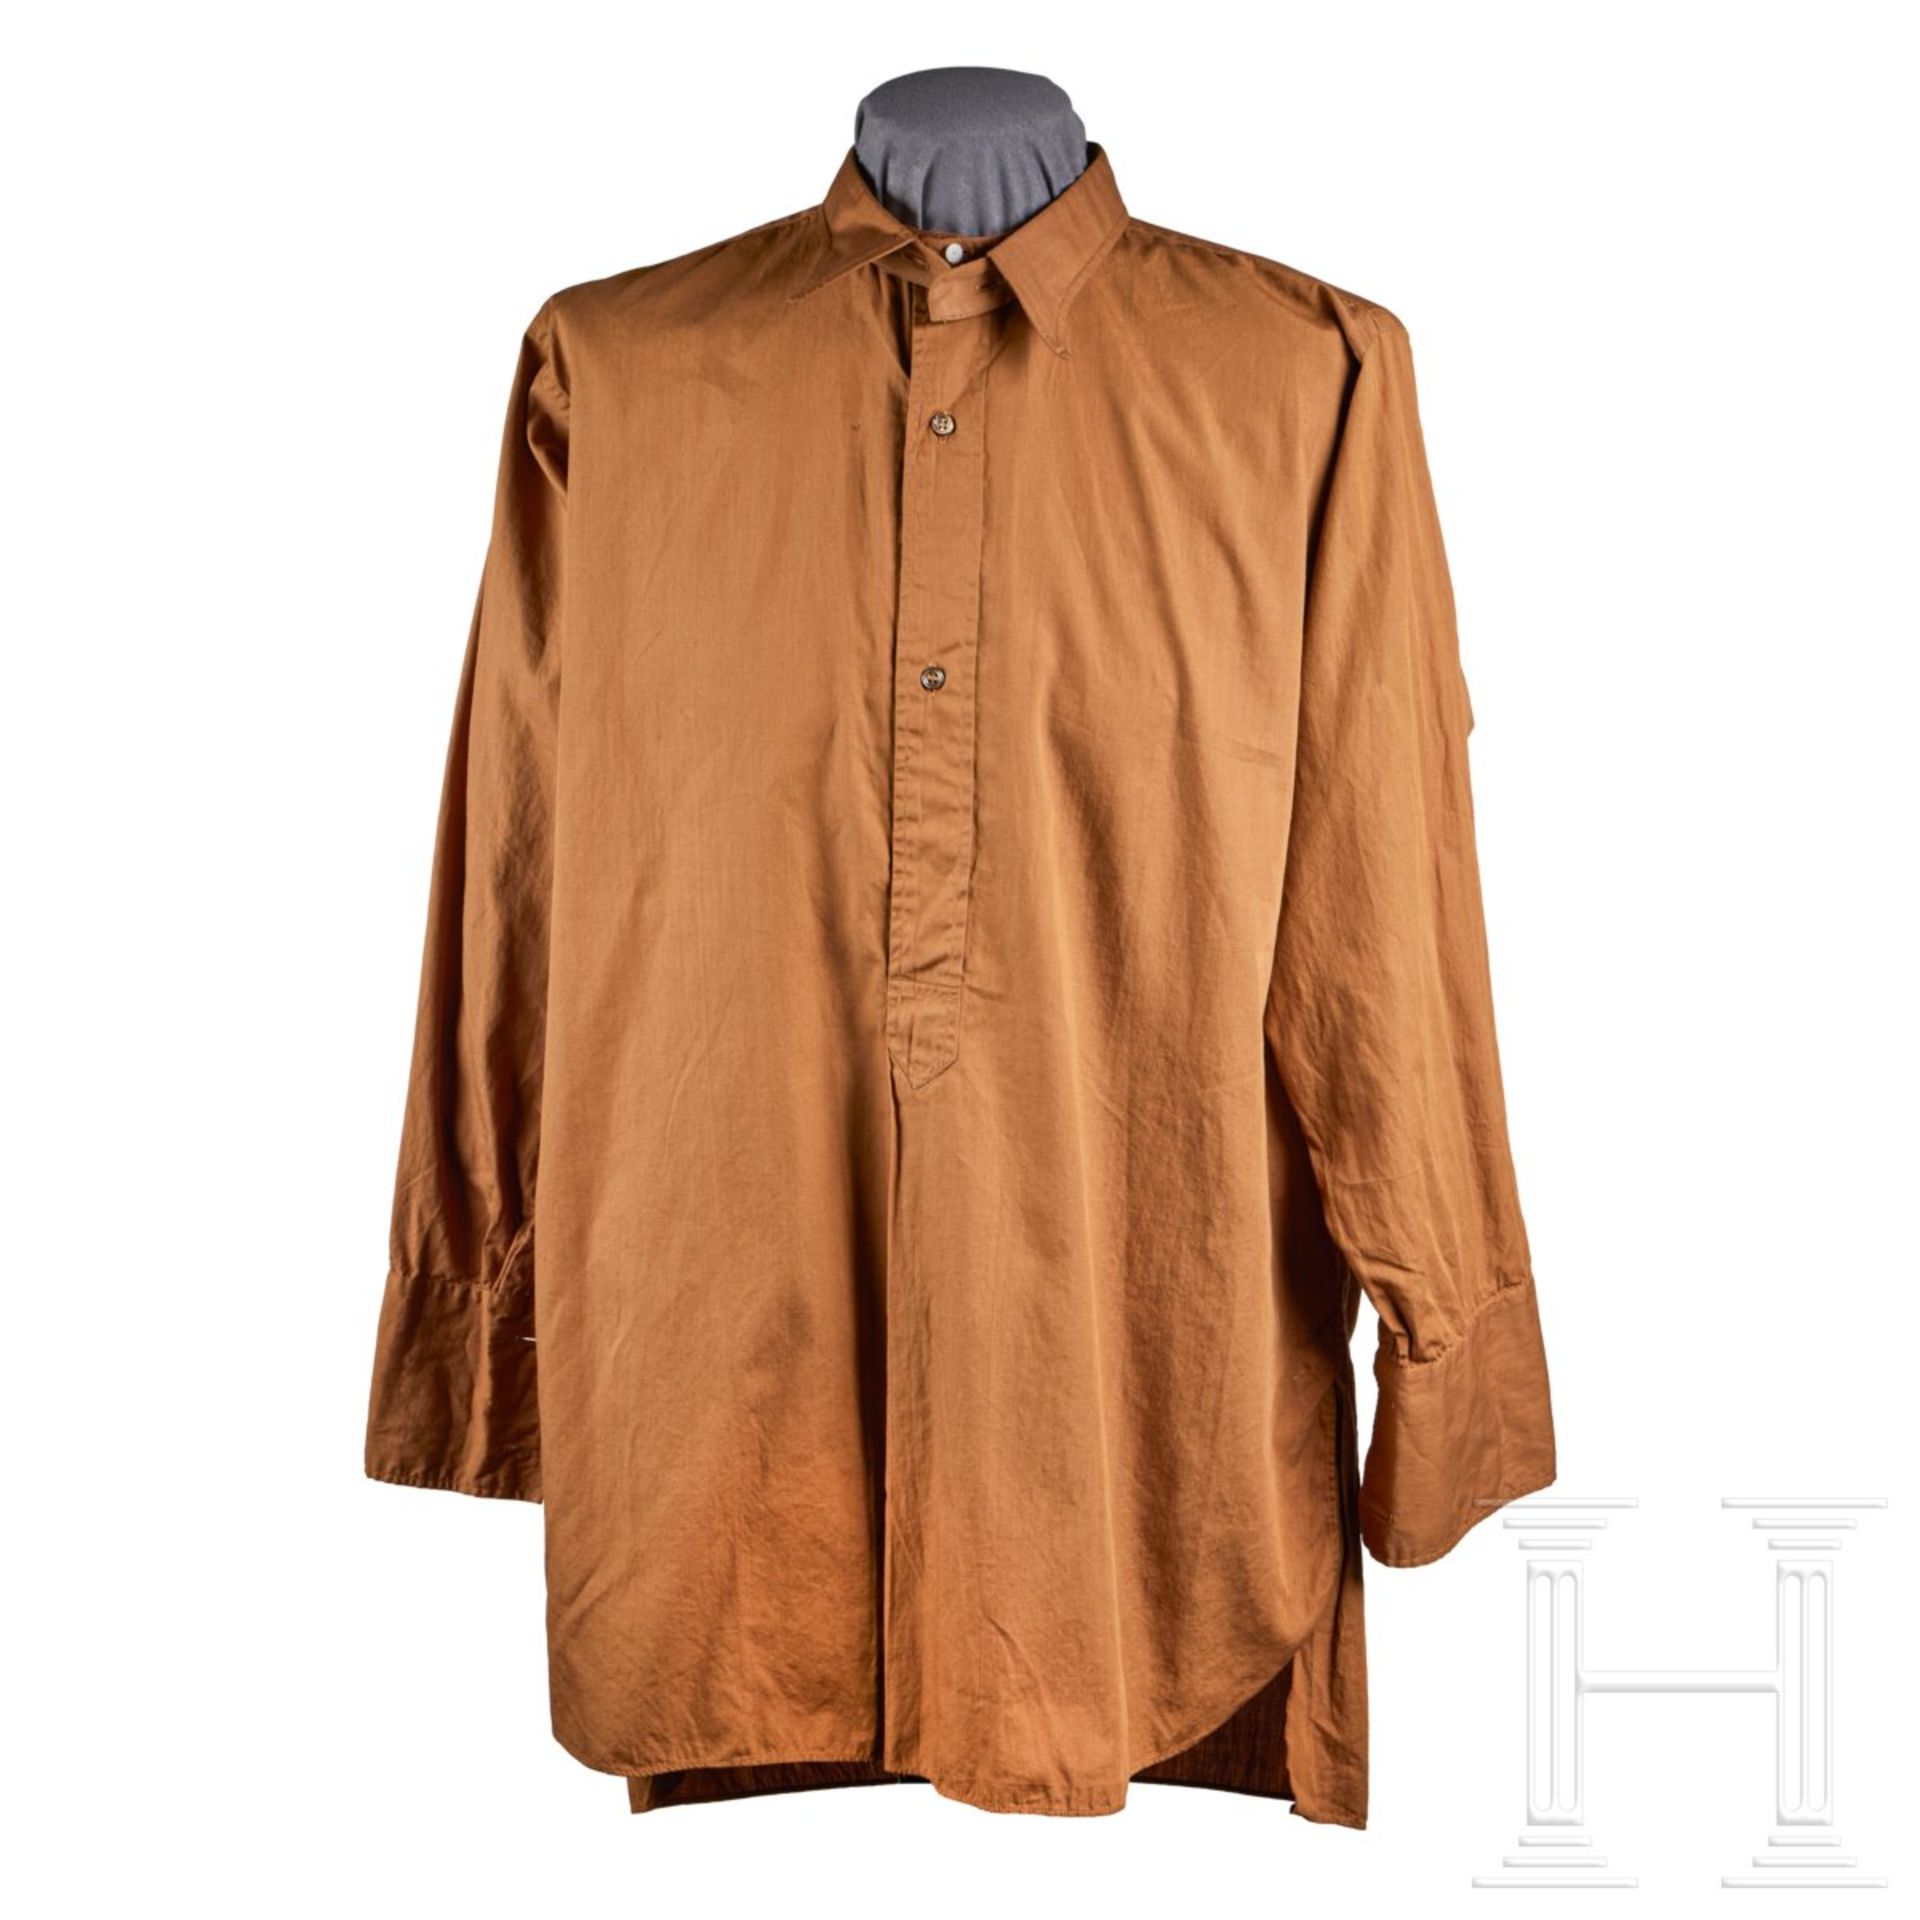 A Brown Uniform Shirt for SS-Verfügungstruppe